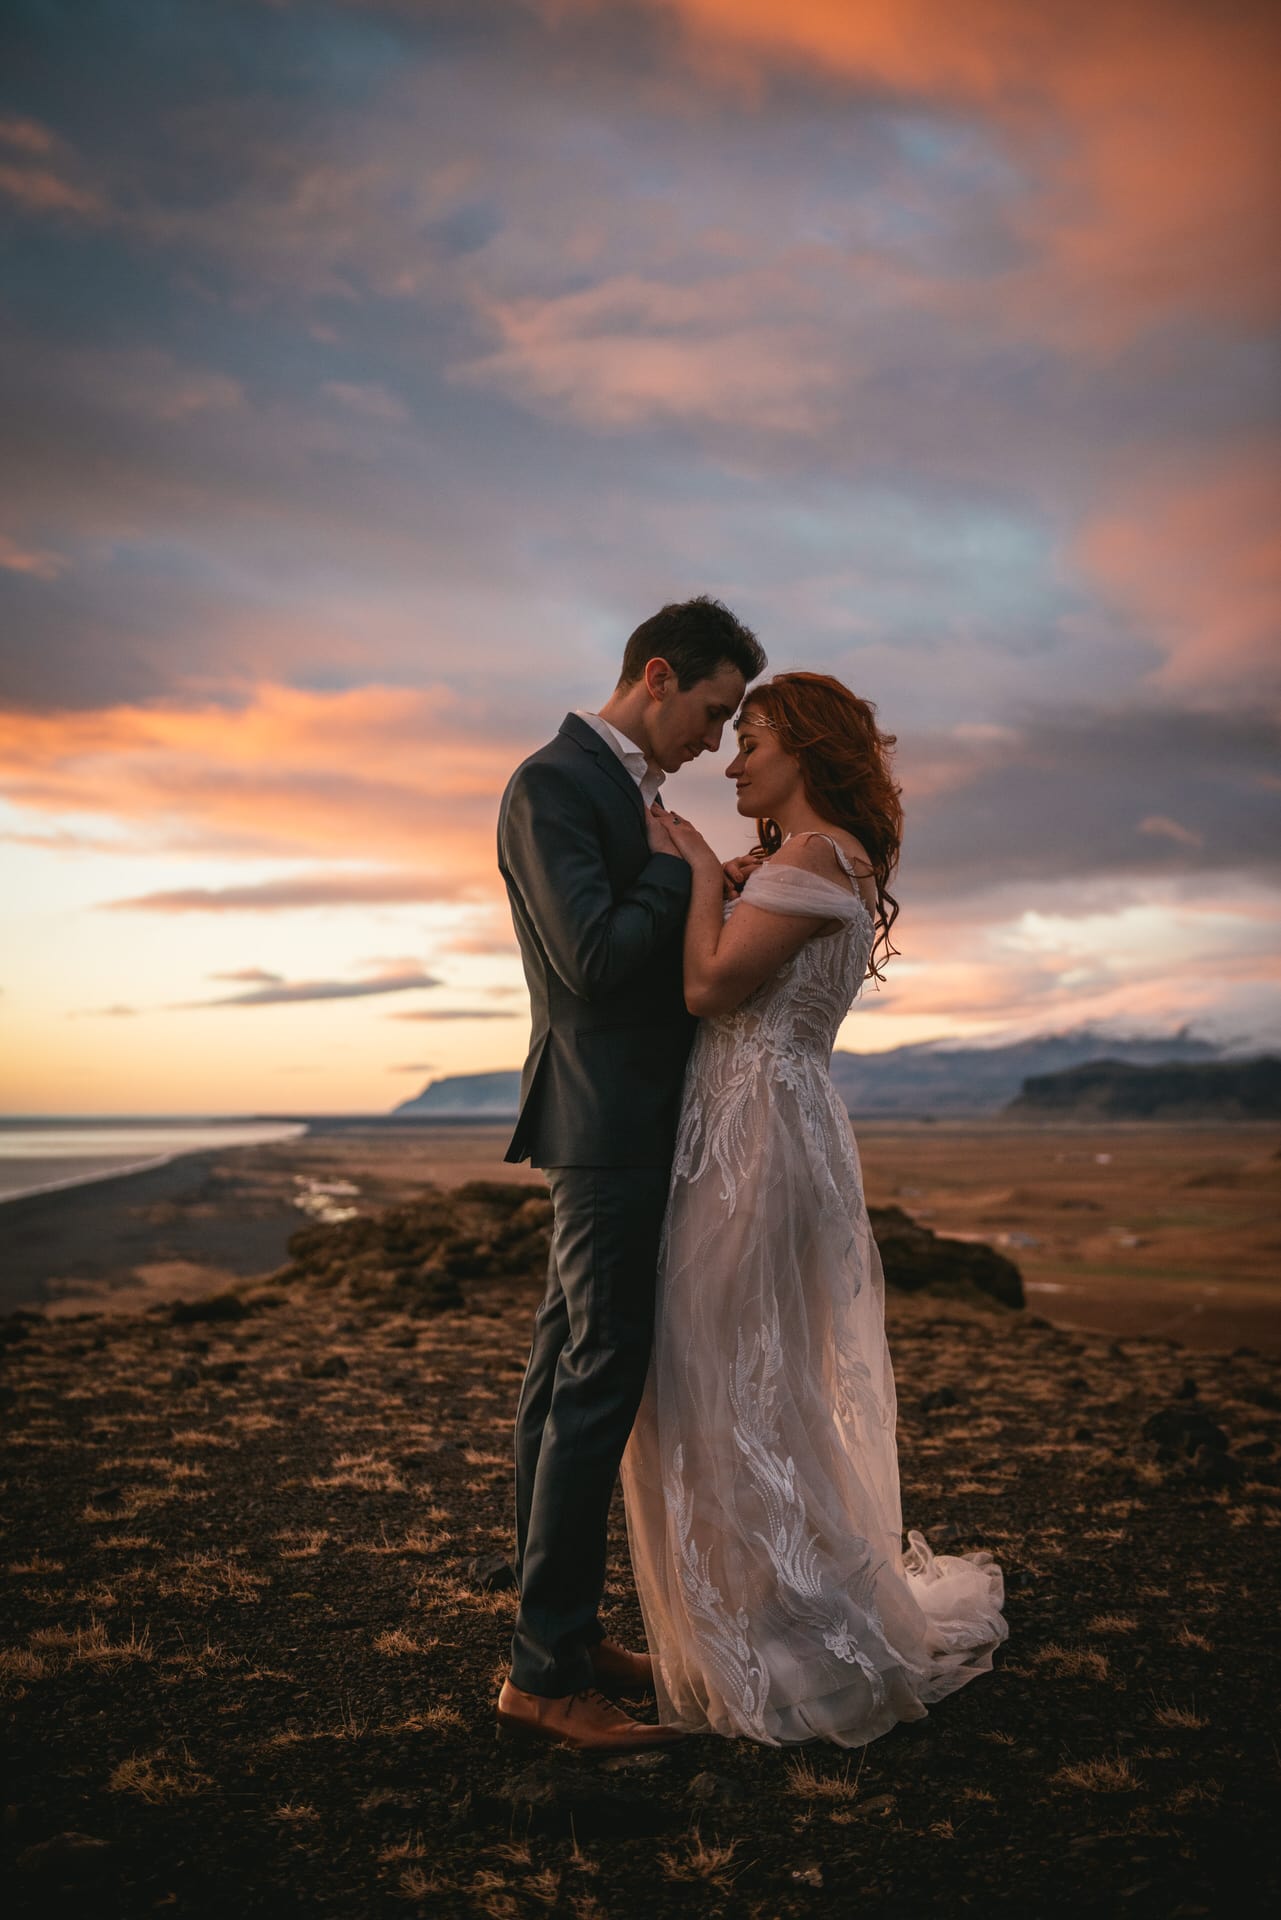 Wedding photoshoot on the south coast of Iceland